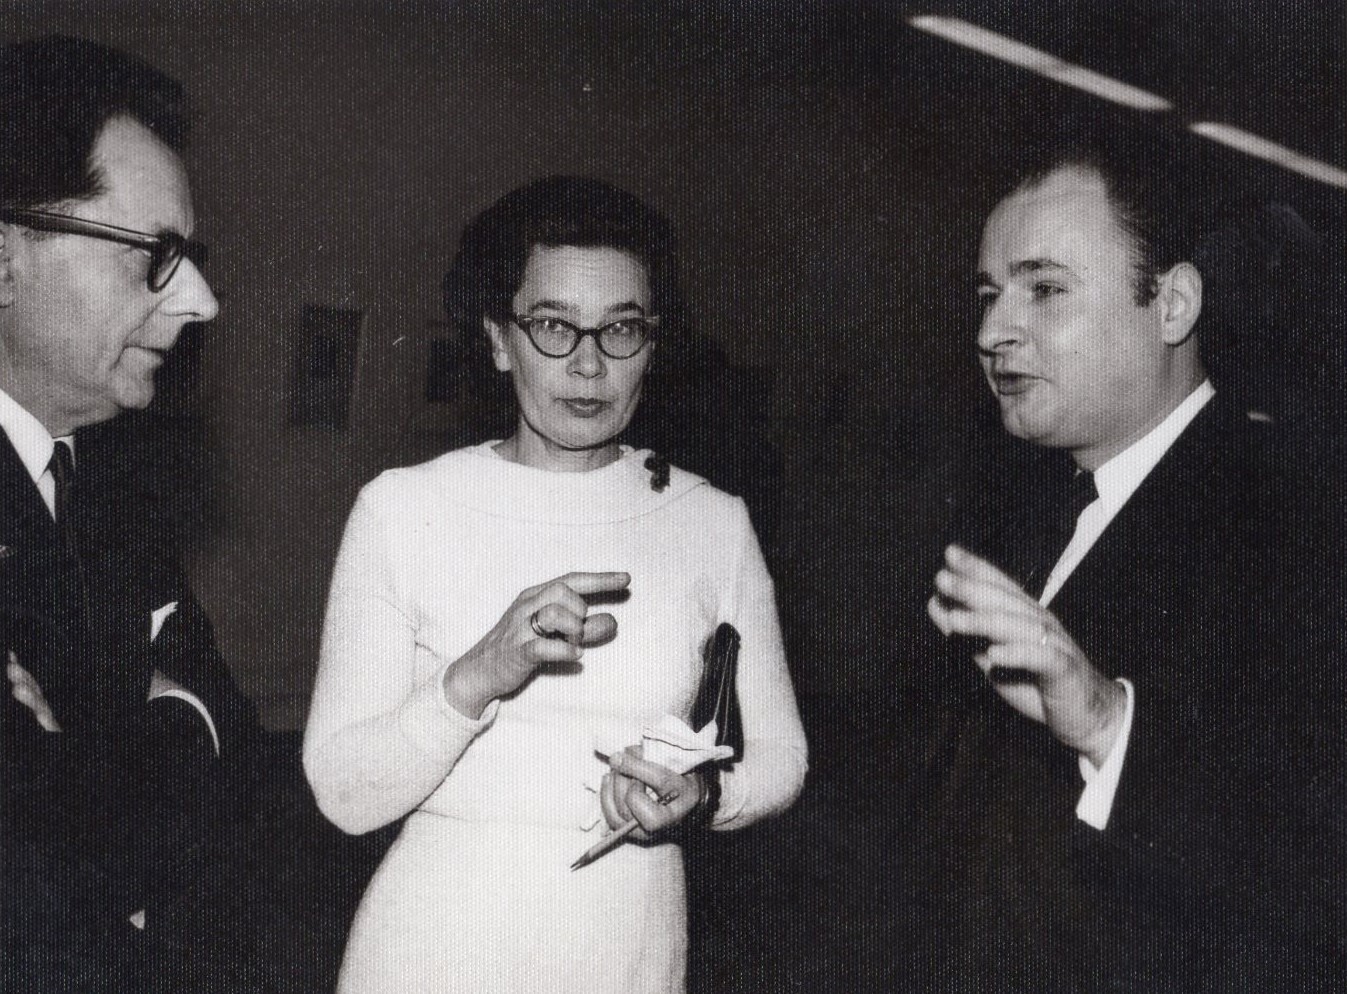 P. Augiaus-Augustinavičiaus meno albumo sutiktuvės. Čikaga, 1962 m. Iš kairės: A. Valeška, D. Lipčiūtė-Augienė ir A. Mackus. MLLM 32803